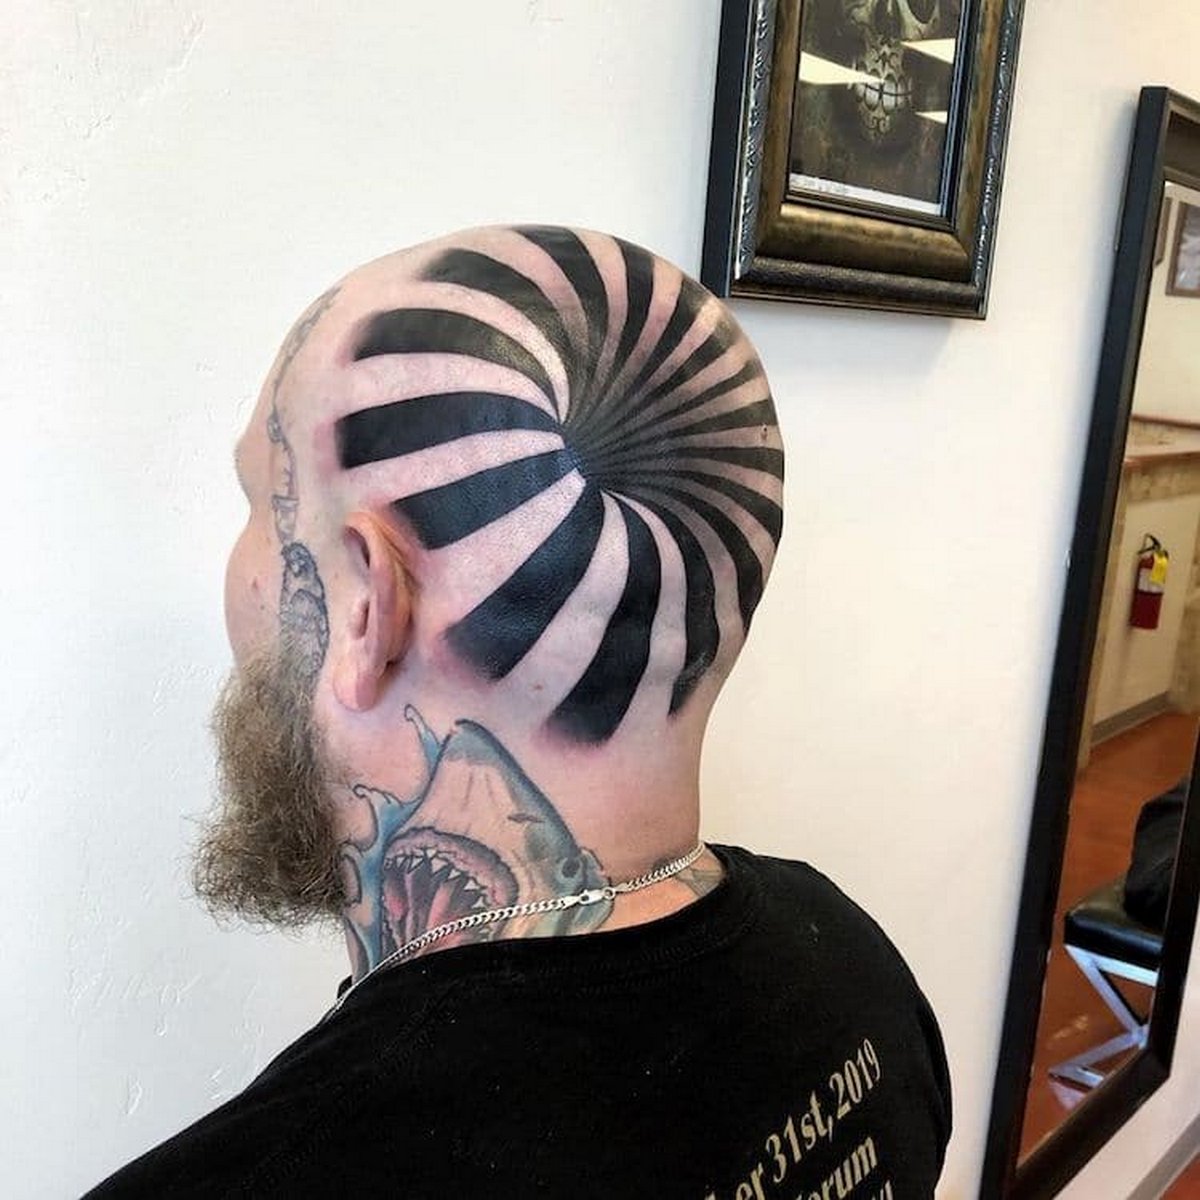 Cet incroyable tatouage 3D donne l’impression que cet homme a un trou dans la tête